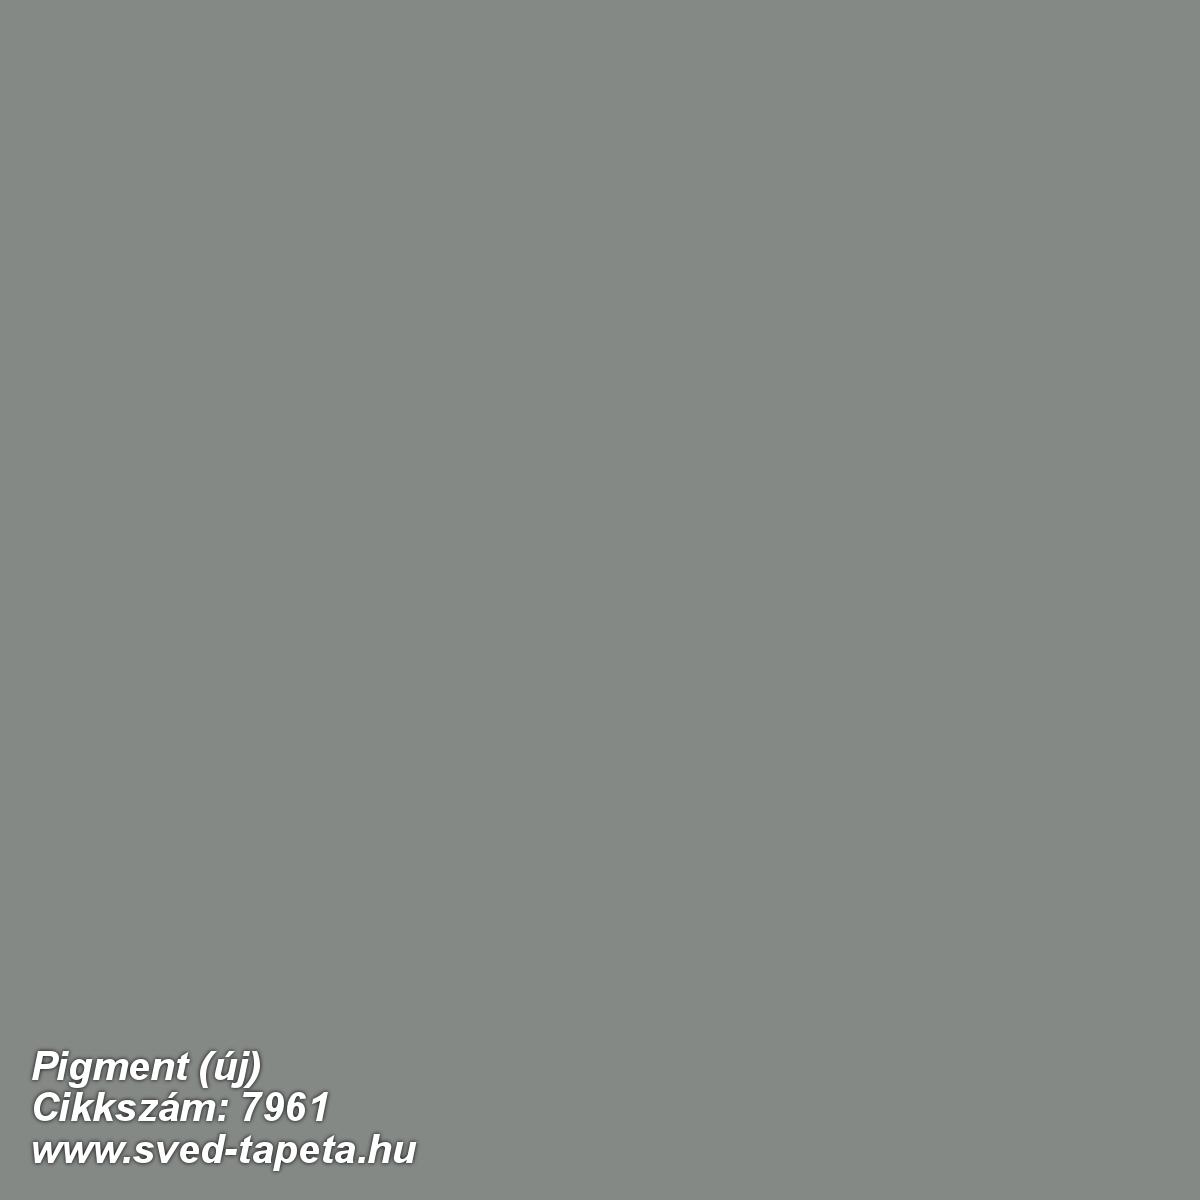 Pigment (új) 7961 cikkszámú svéd Borasgyártmányú designtapéta